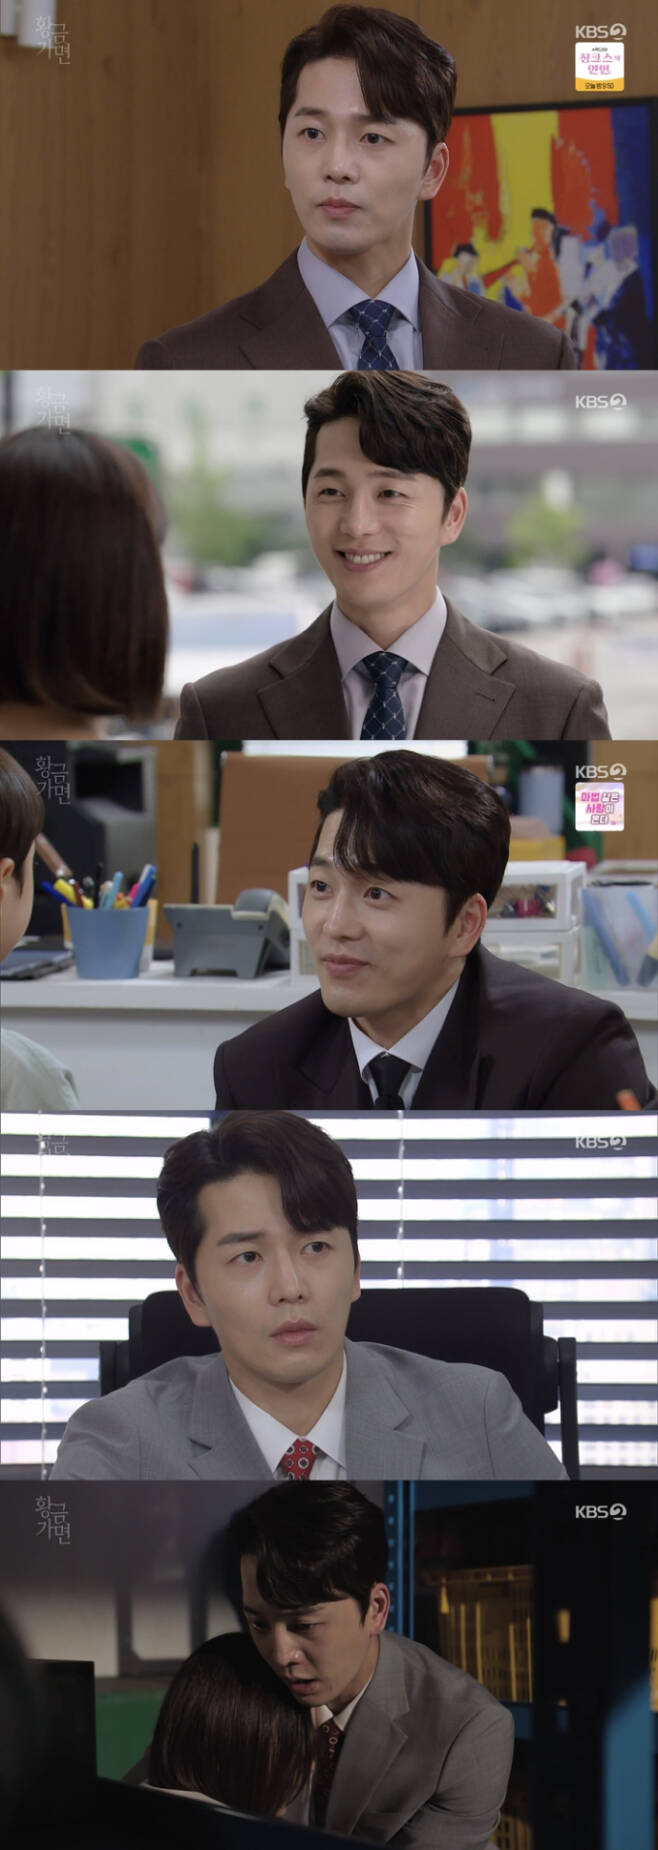 사진 제공: KBS2 '황금가면'